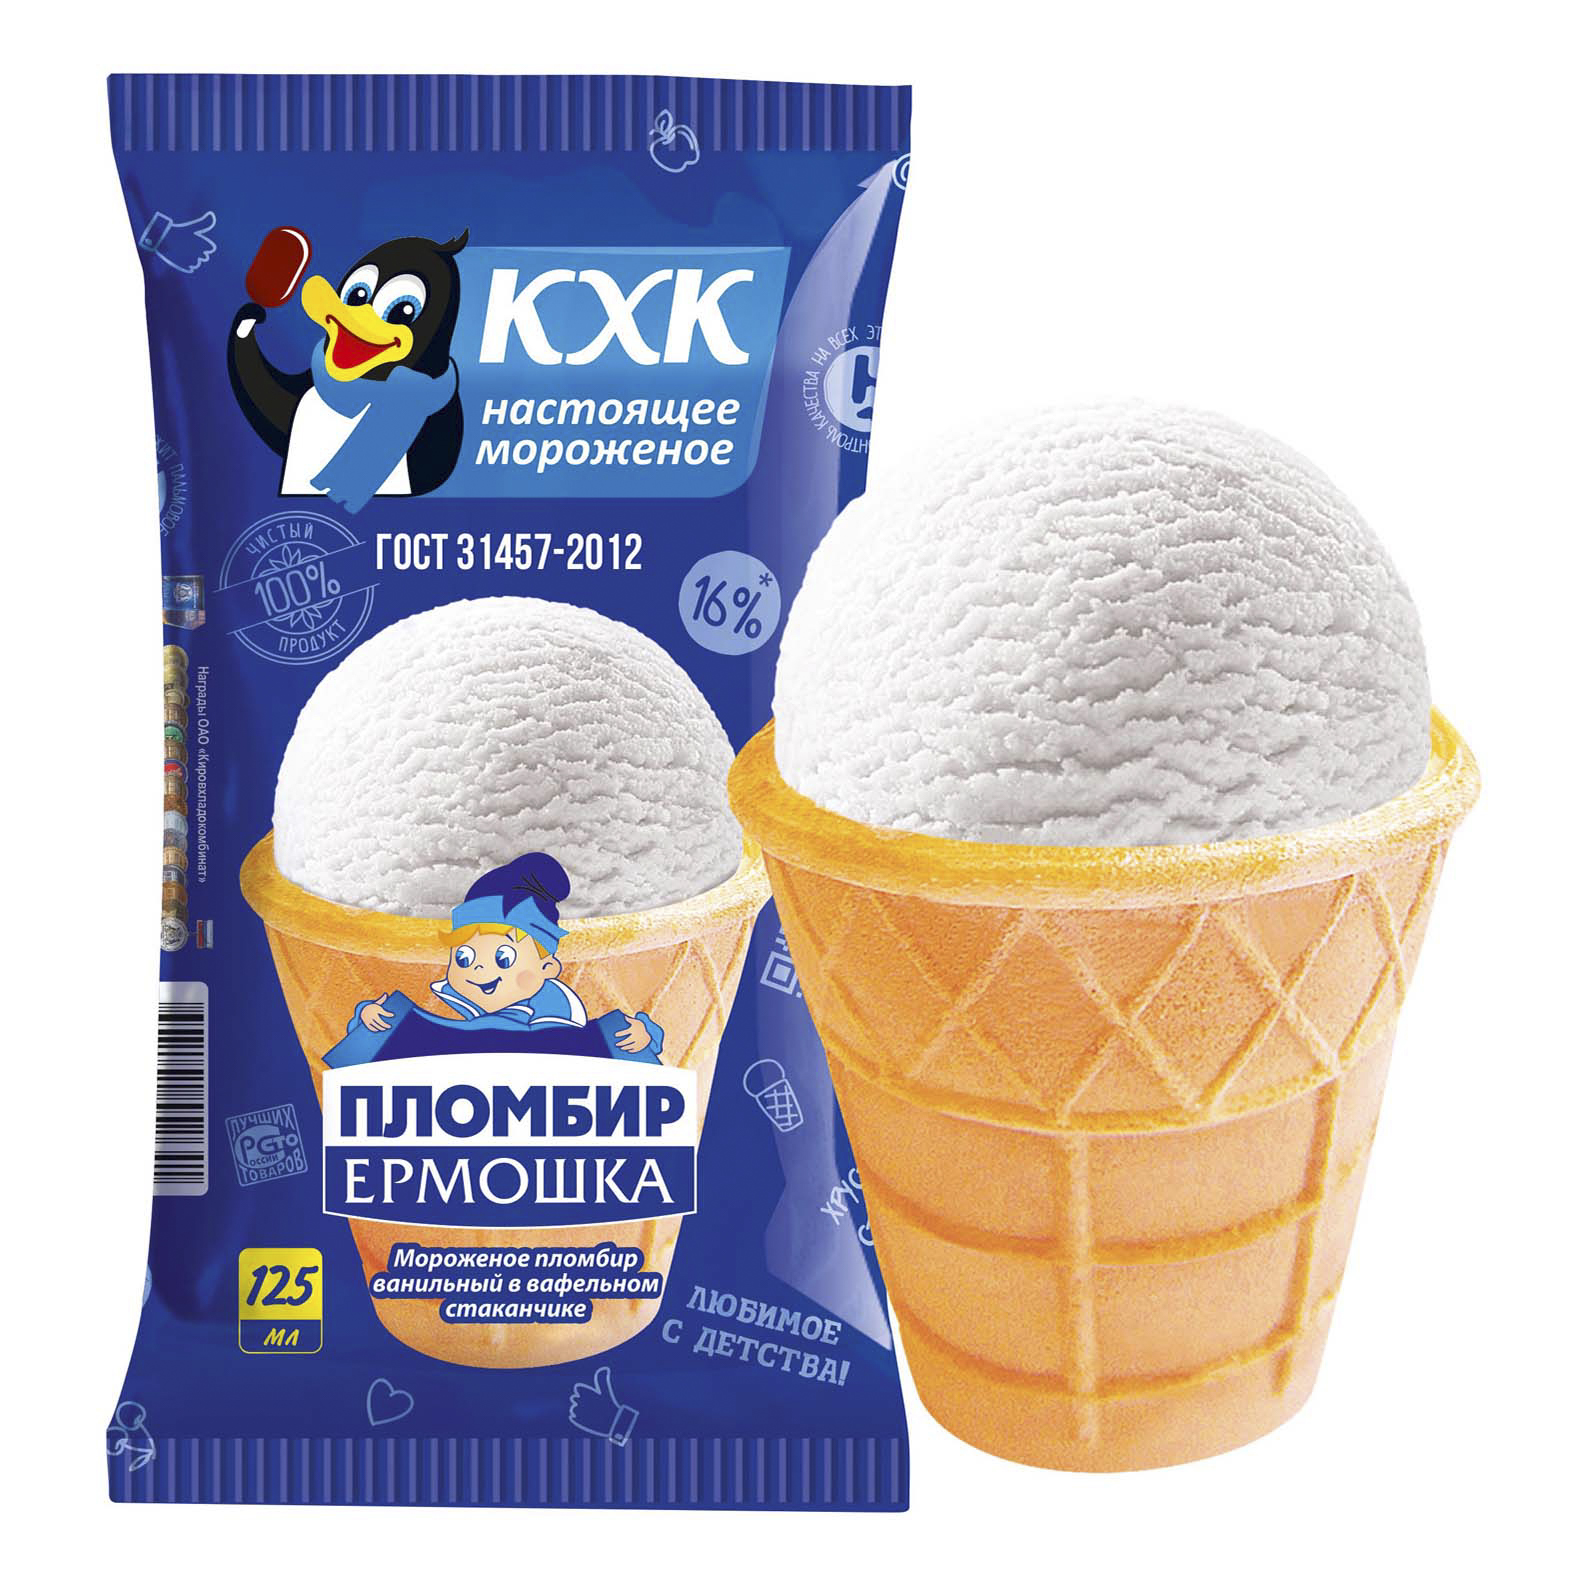 Мороженое Новгородский Хк